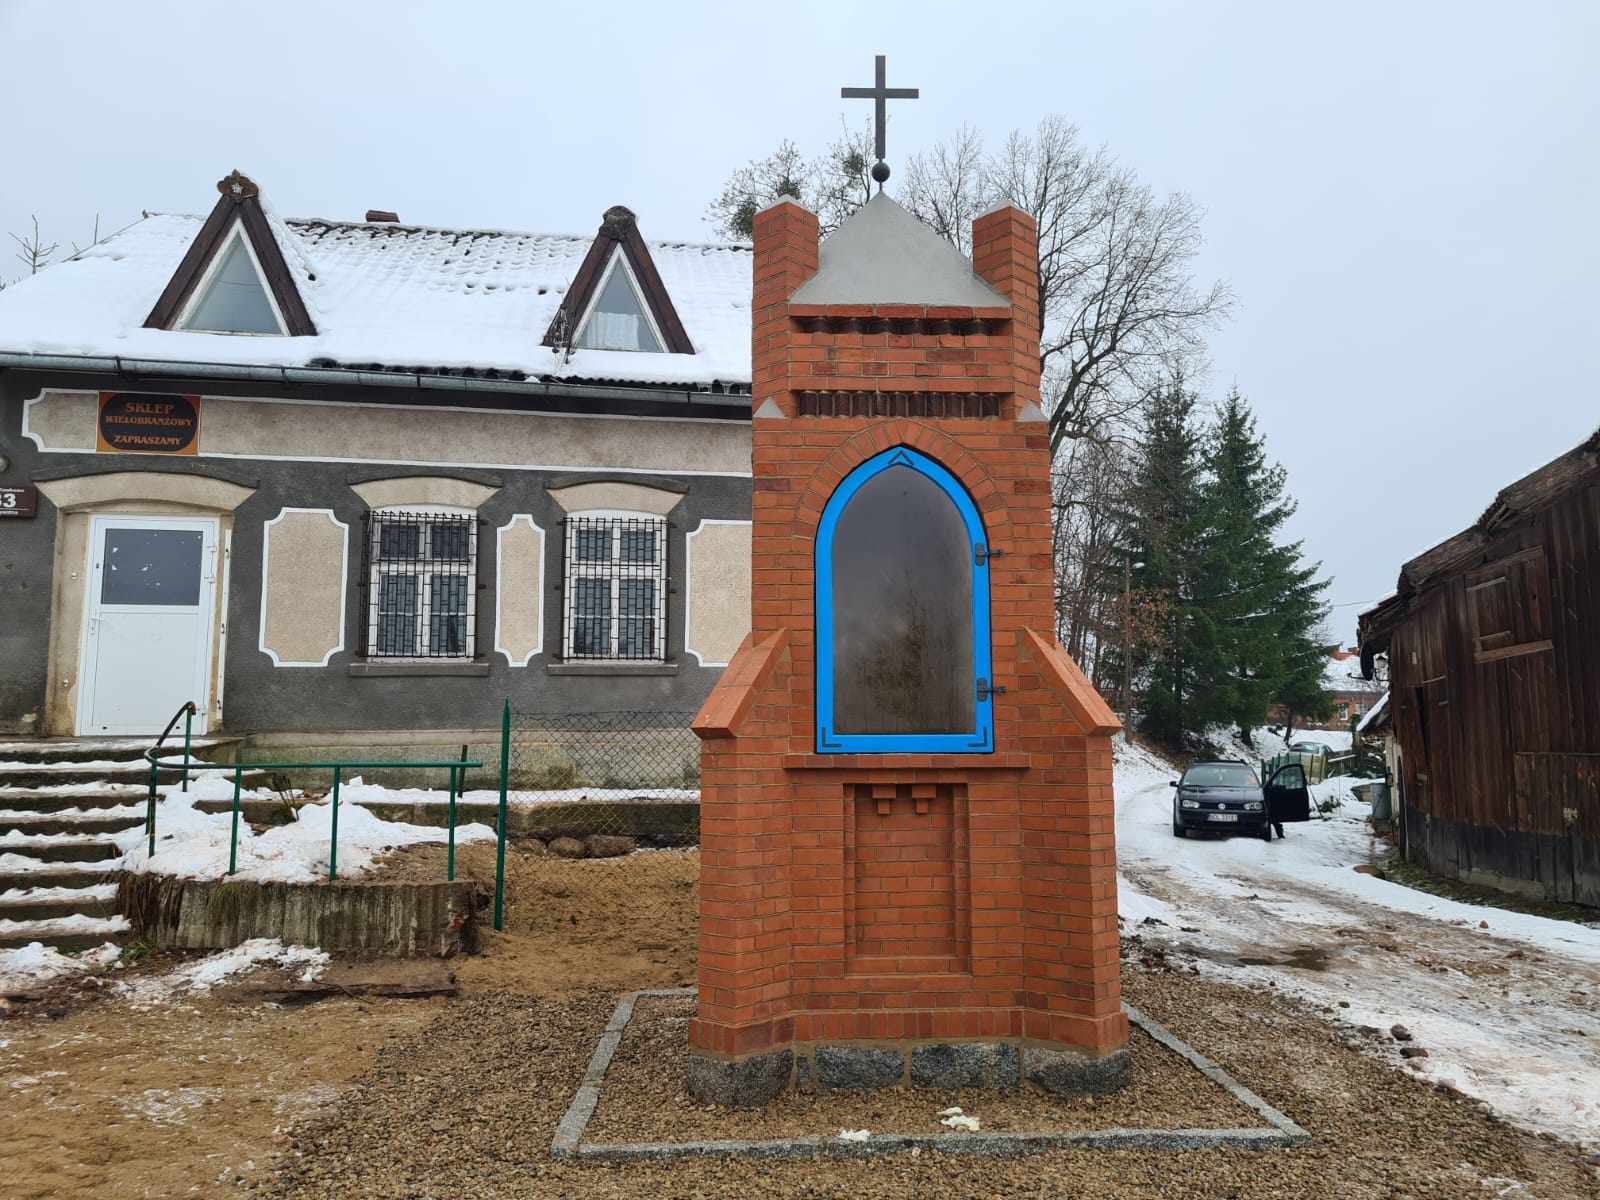 Odrodzona z ruiny: historia kapliczki w Nowym Kawkowie kultura Olsztyn, Wiadomości, zShowcase